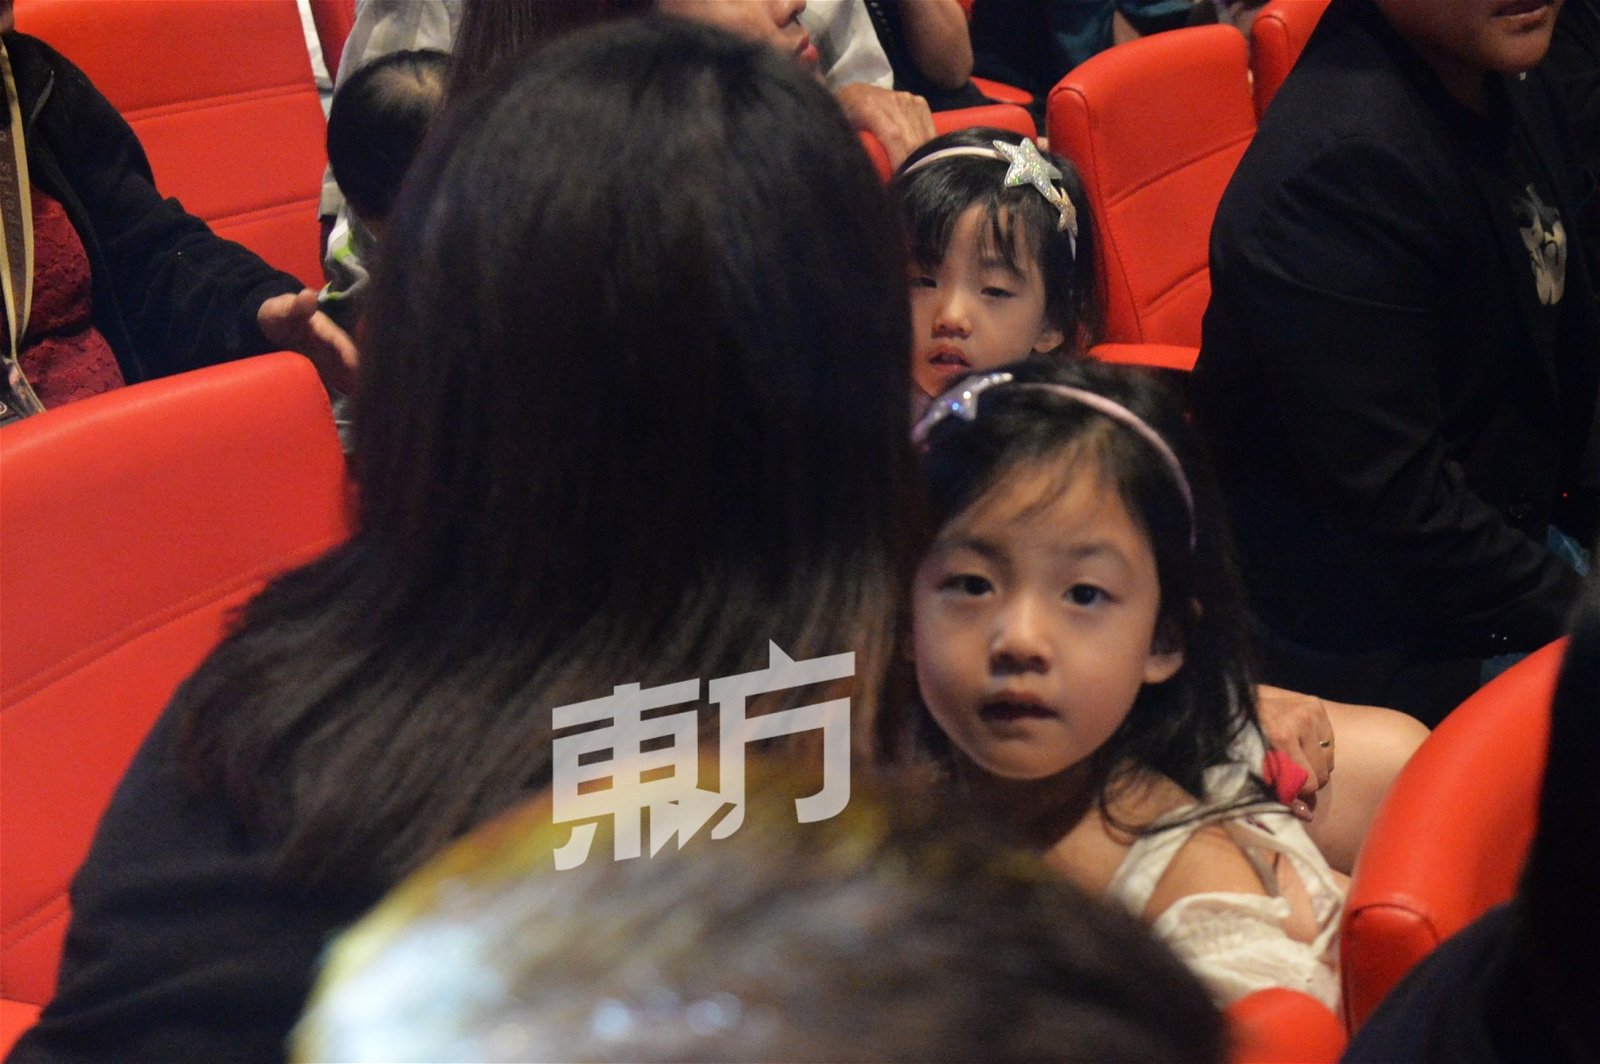 刘畊宏因《爸爸去哪儿》爆红，女儿小泡芙也来到现场，刘爸爸流露爱意说: “无论去到哪里都要带著家人。”